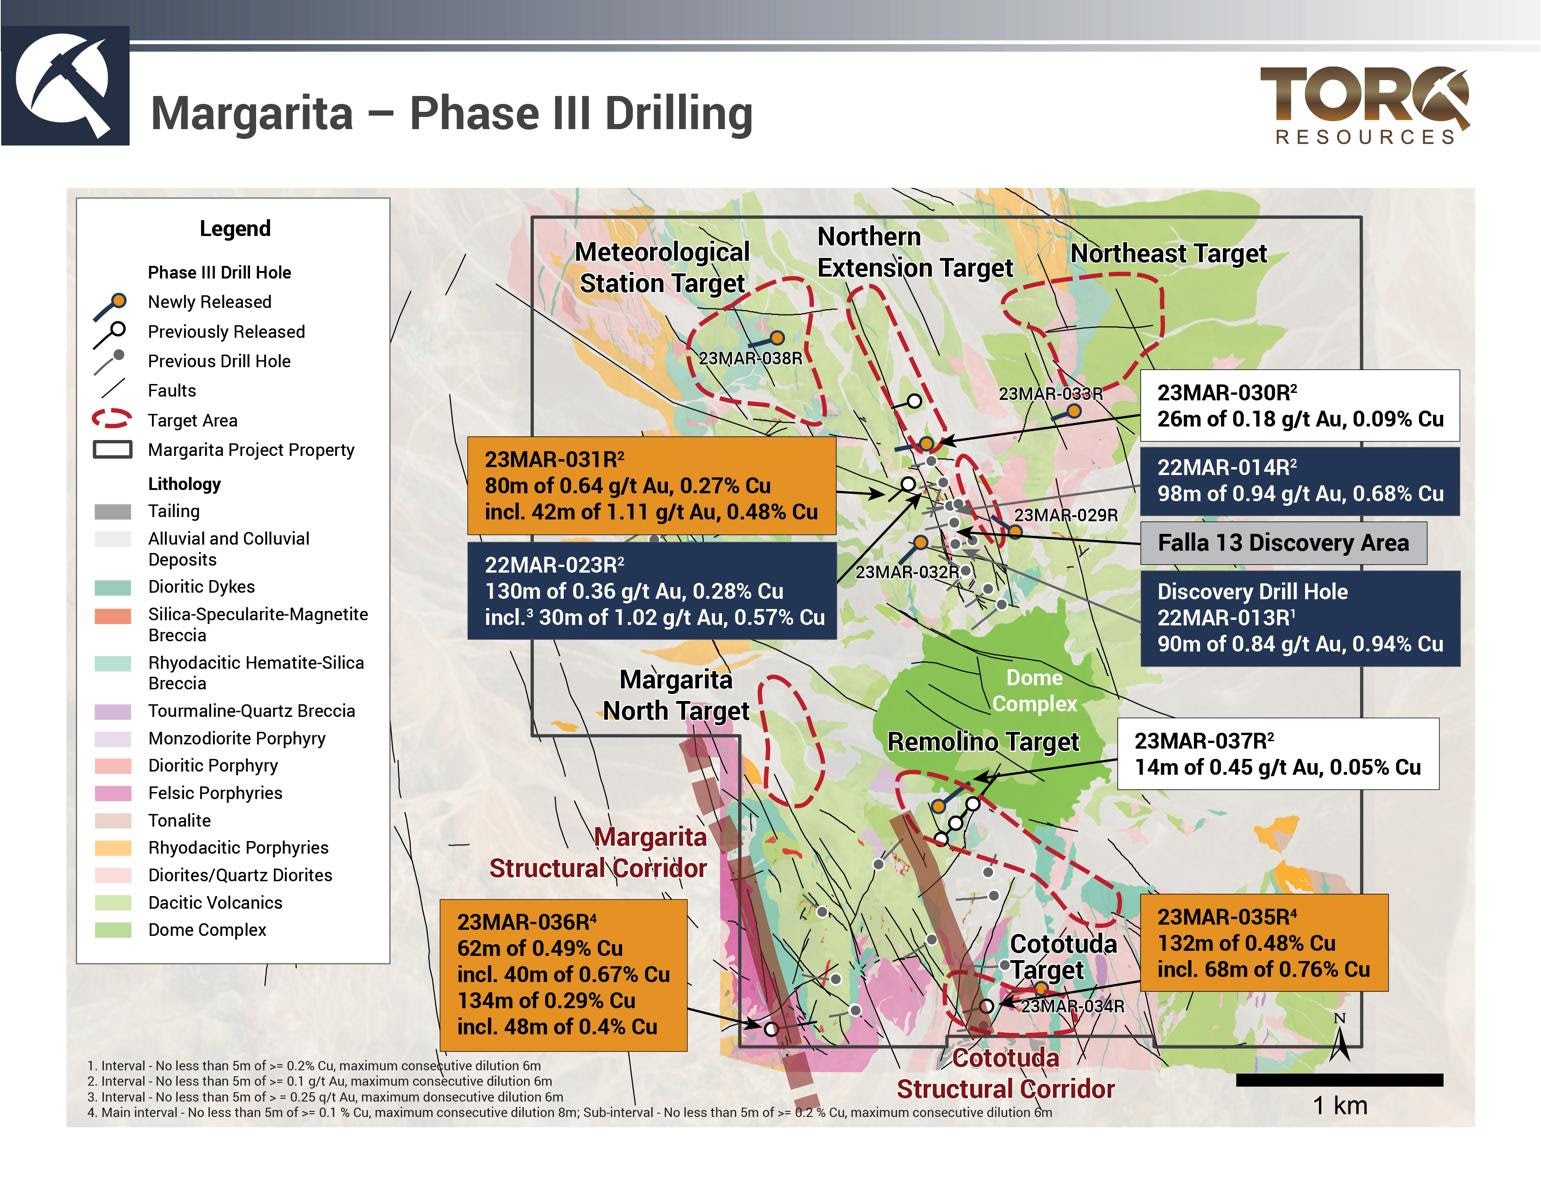 Torq excava 34 metros de 0,89 g/t de oro y 0,22% de cobre en el área de descubrimiento Falla 13 en Margarita